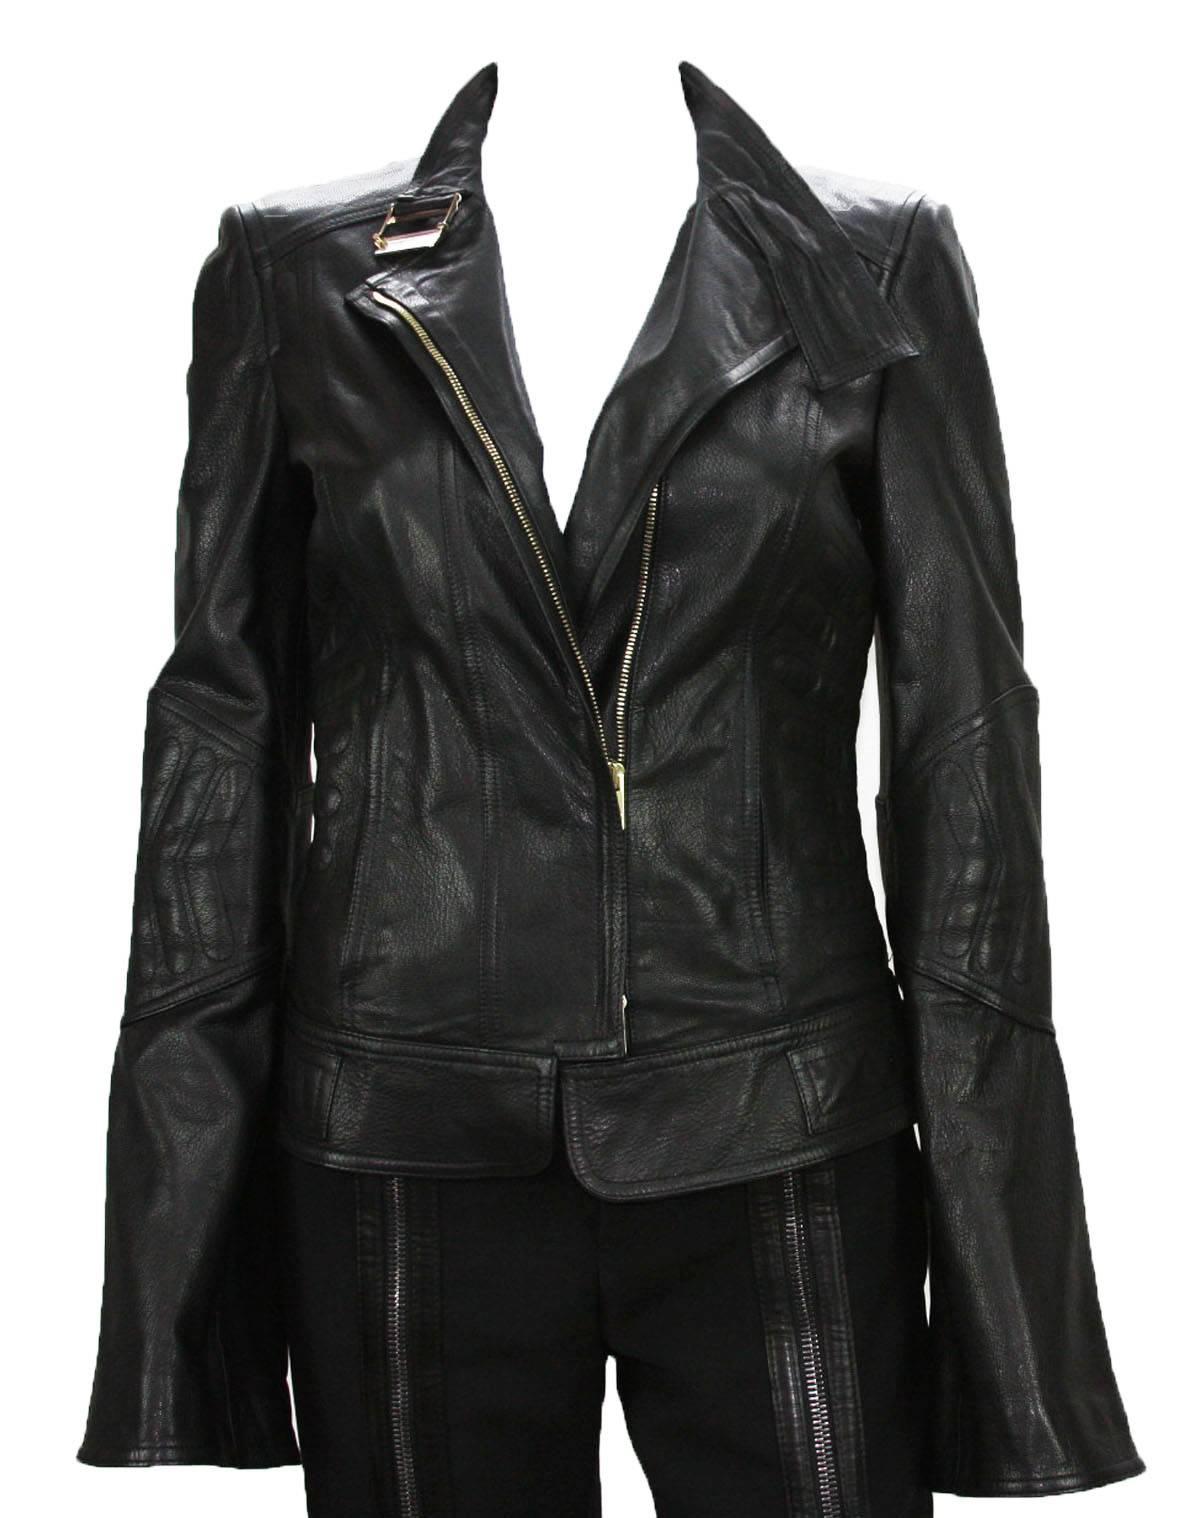 
Nouvelle veste en cuir TOM FORD pour GUCCI
Taille italienne 42 - US 6
Collection F/W 2004
100% cuir, couleur noire, motif à chevrons, deux poches latérales zippées, manches cloche zippées, bretelles latérales réglables.
Mesures : Longueur - 22